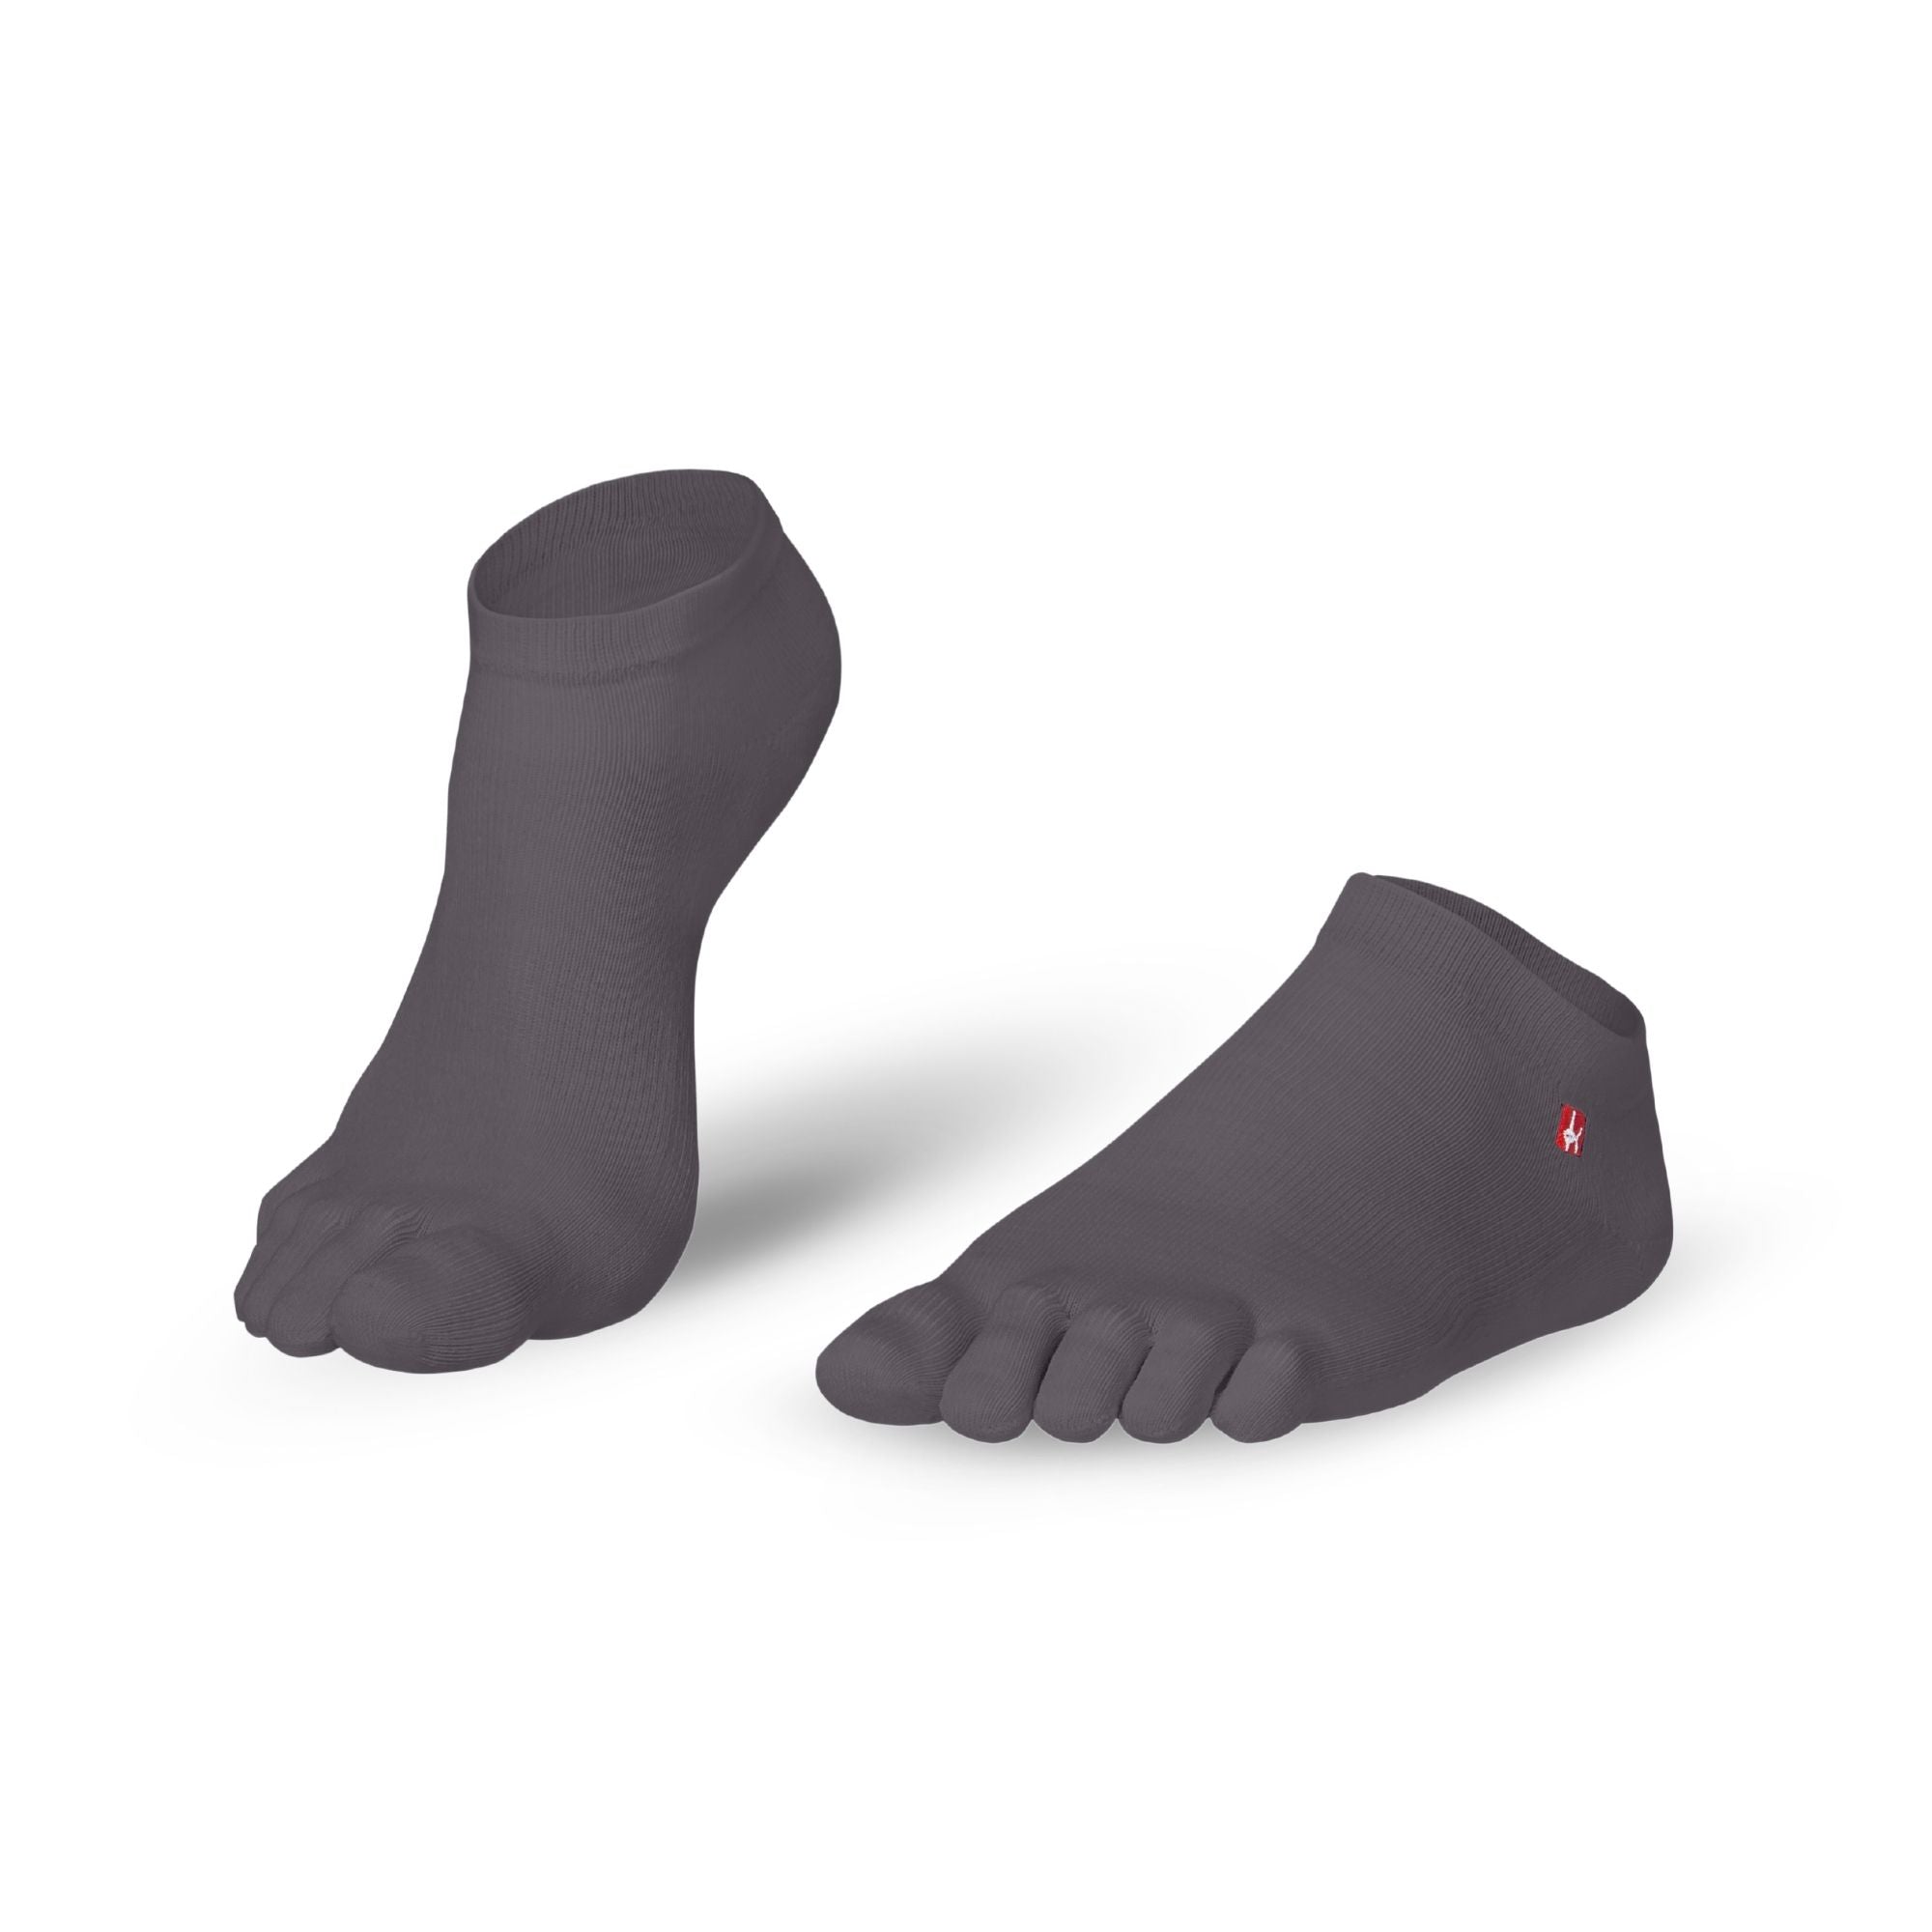 Prstne nogavice Coolmax Sneaker by Knitido Track & Trail ultralite fresh v svetlo sivi barvi